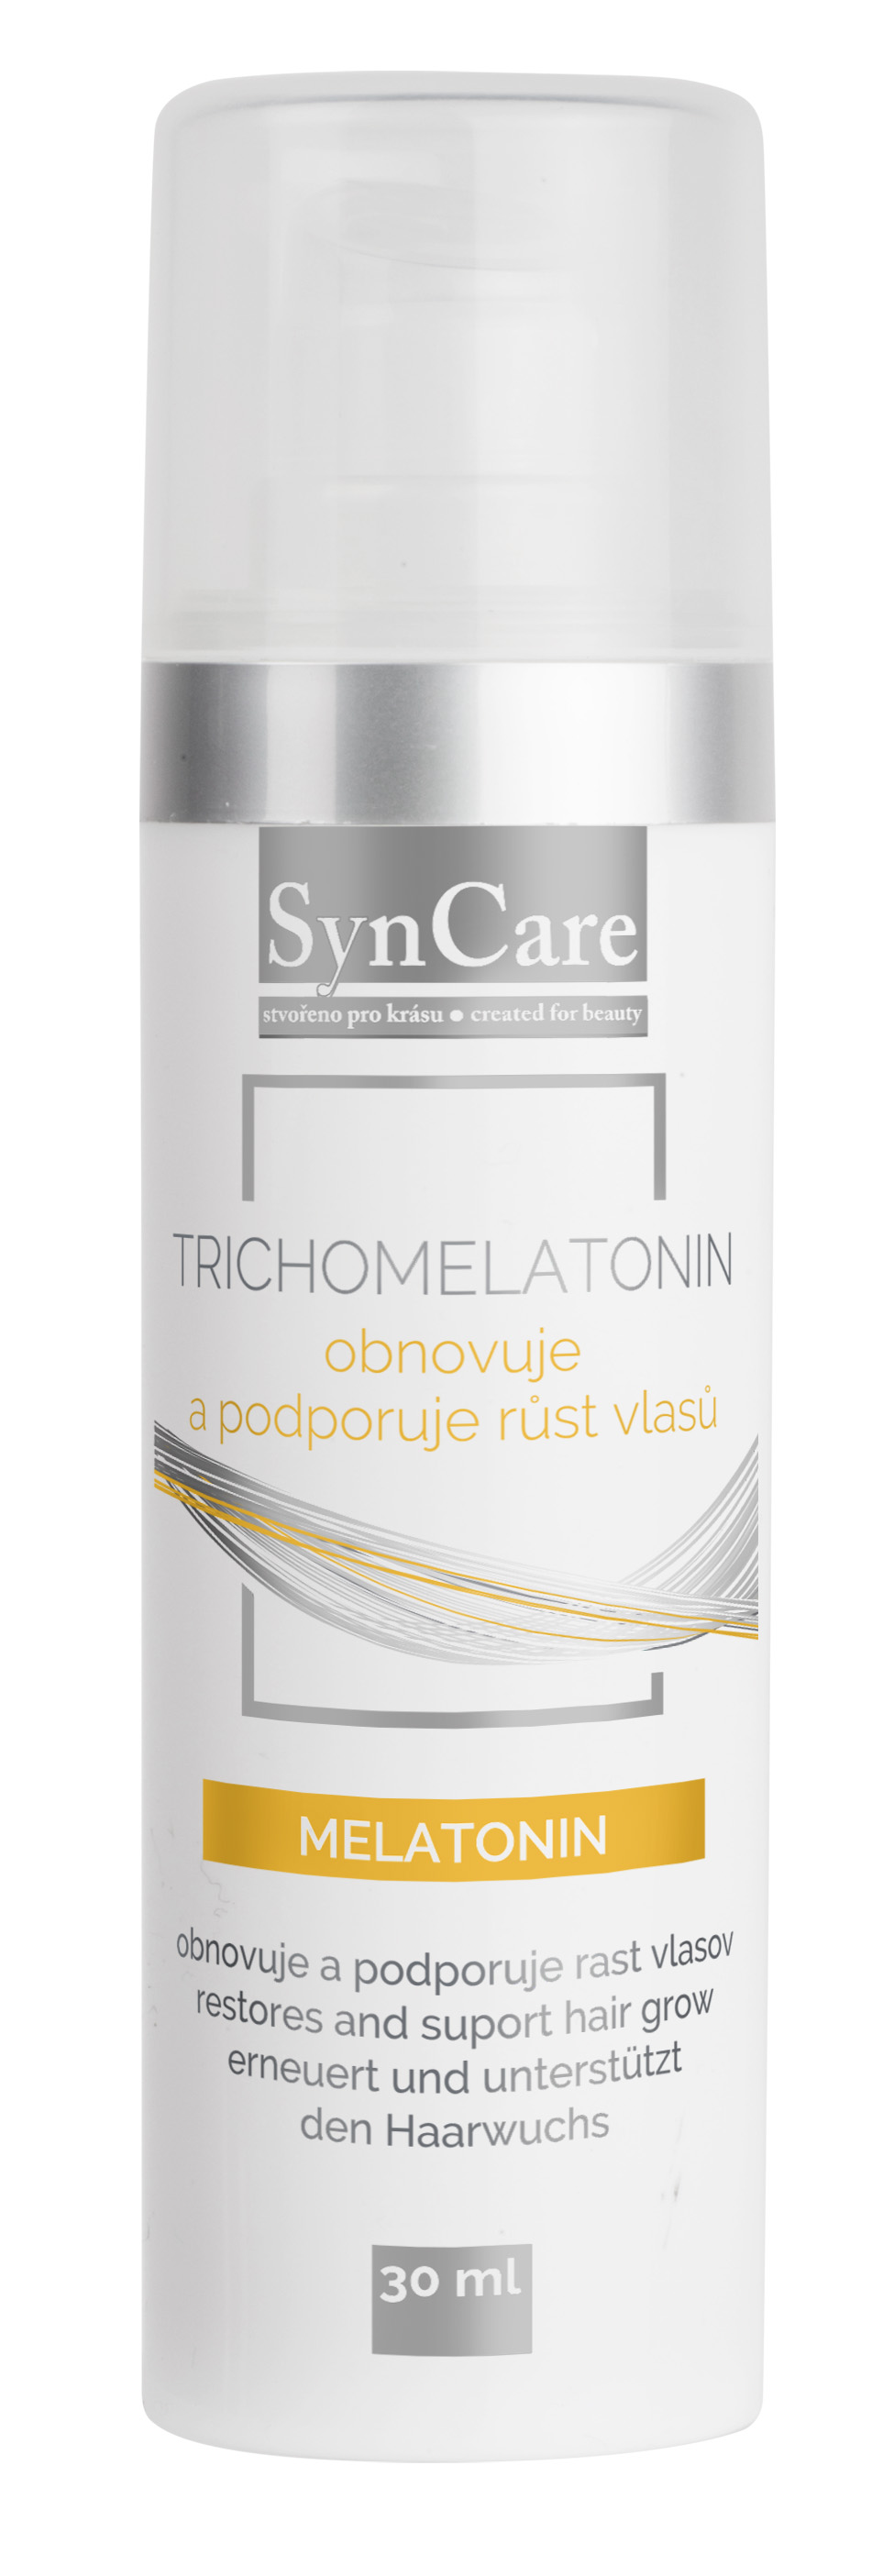 SynCare TrichoMelatonin - roztok pro růst vlasů 30 ml